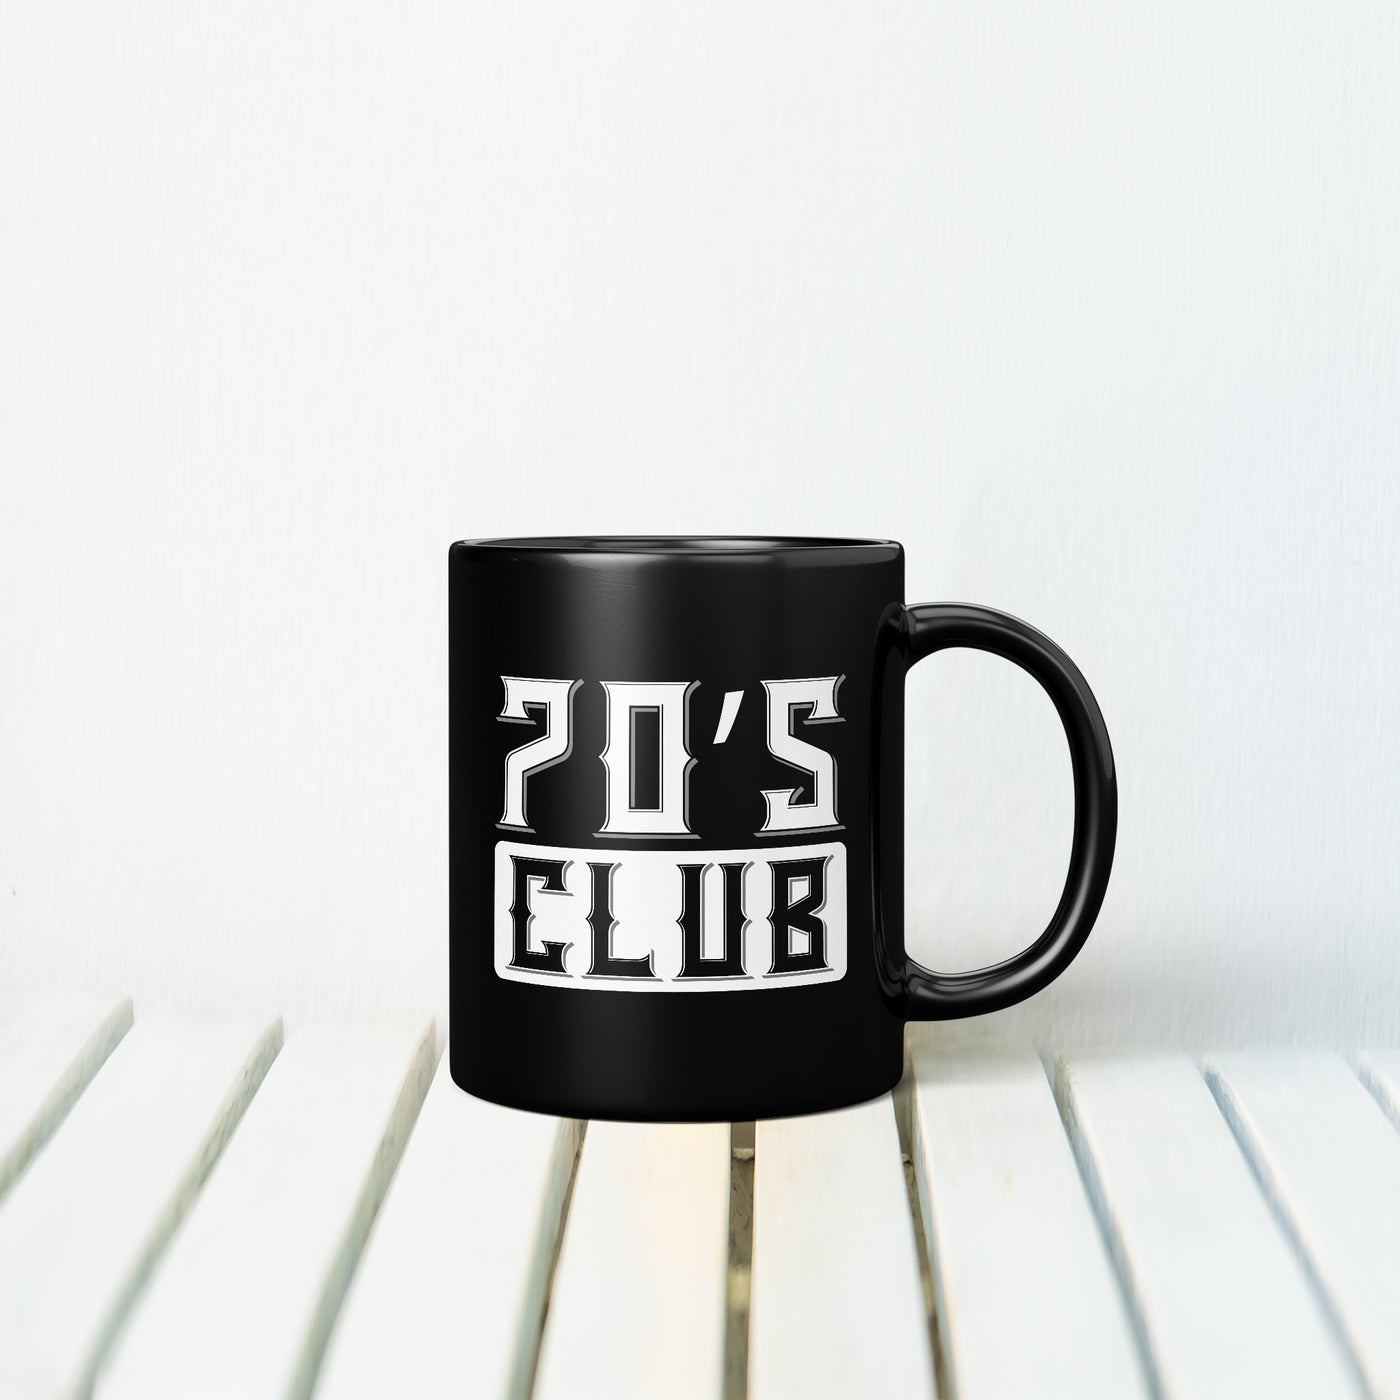 70's Club MUG